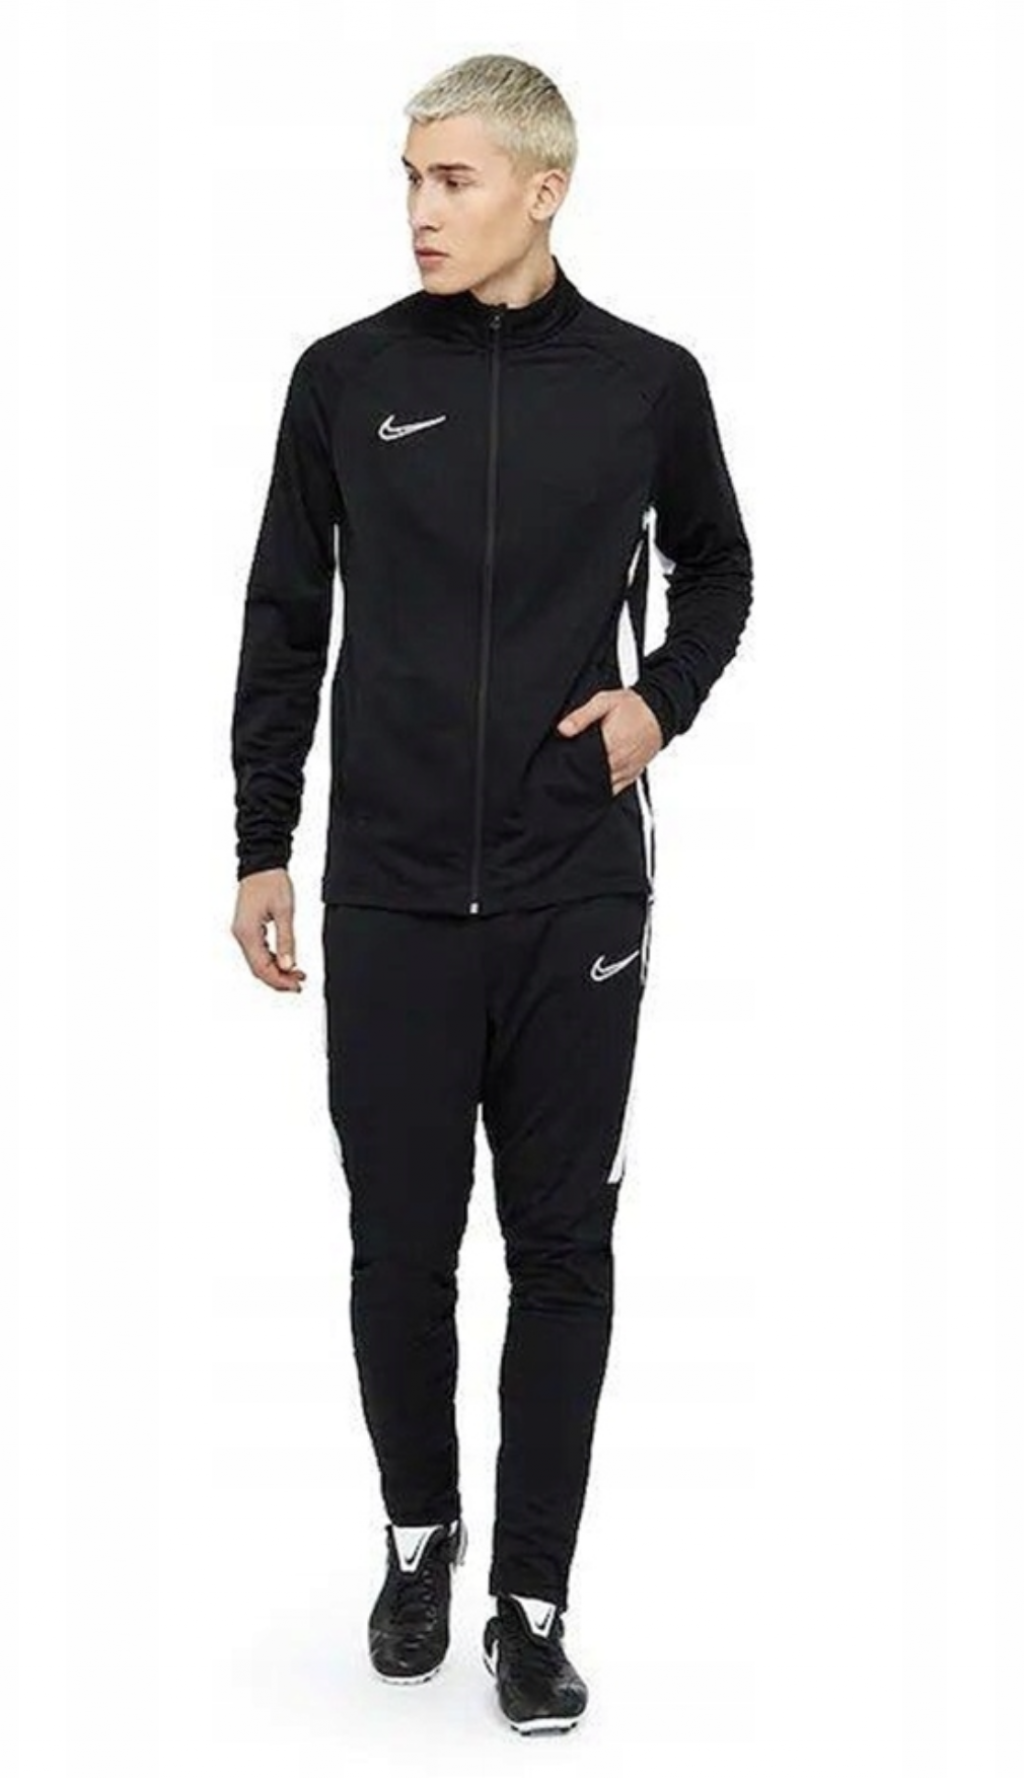 Nike Academy 21 Suit/костюм спортивный